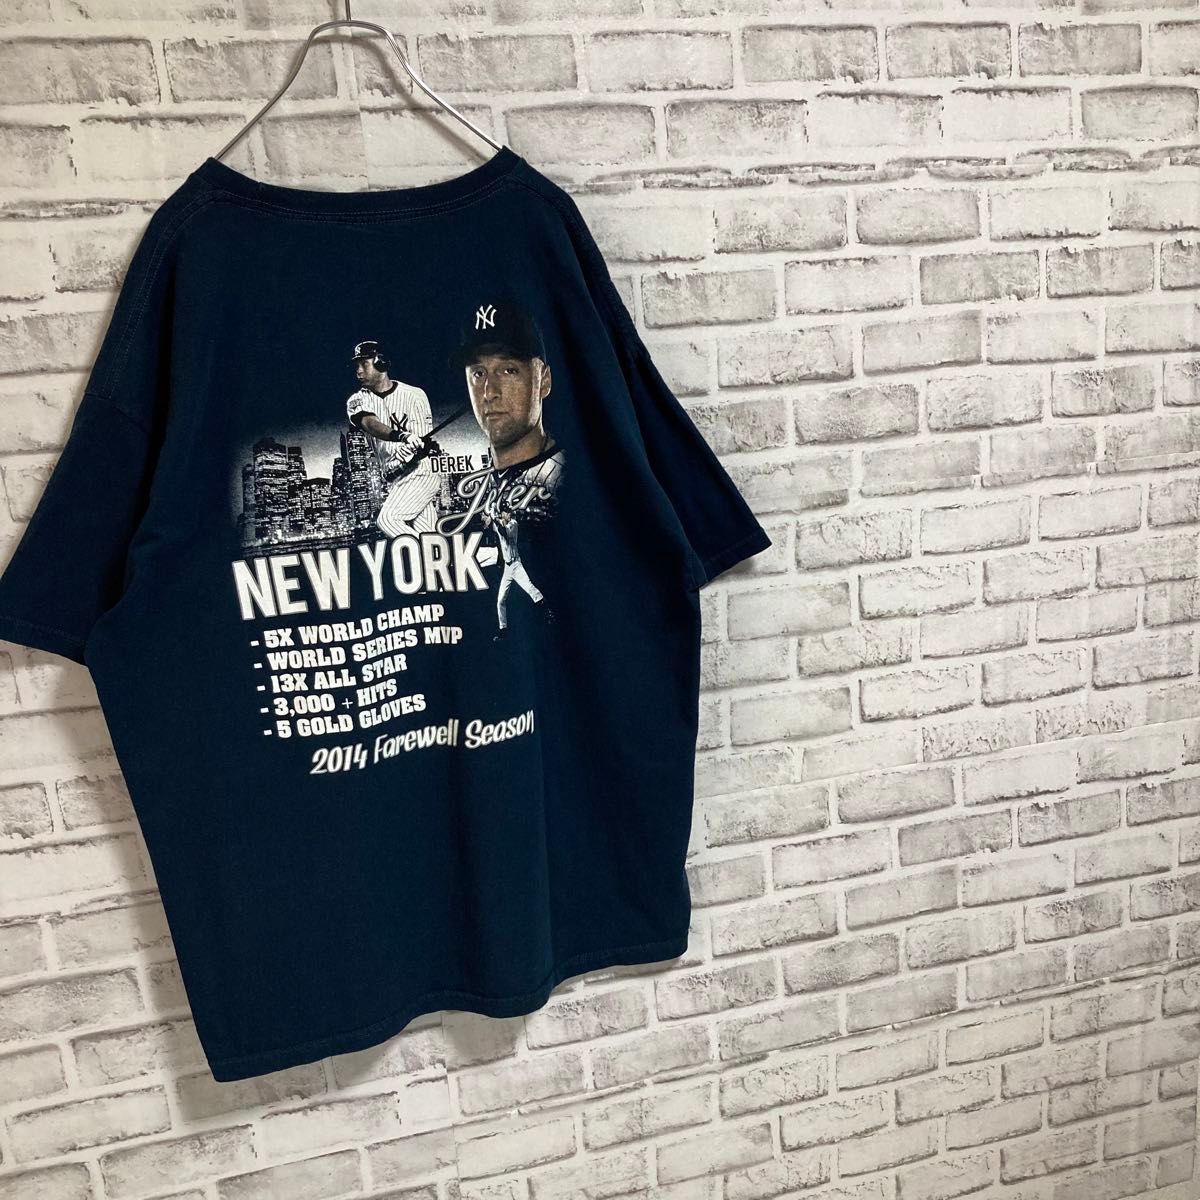 超激レアTee★NY ニューヨーク ヤンキース New York Yankees Derek Jeter 引退記念Tシャツ 古着